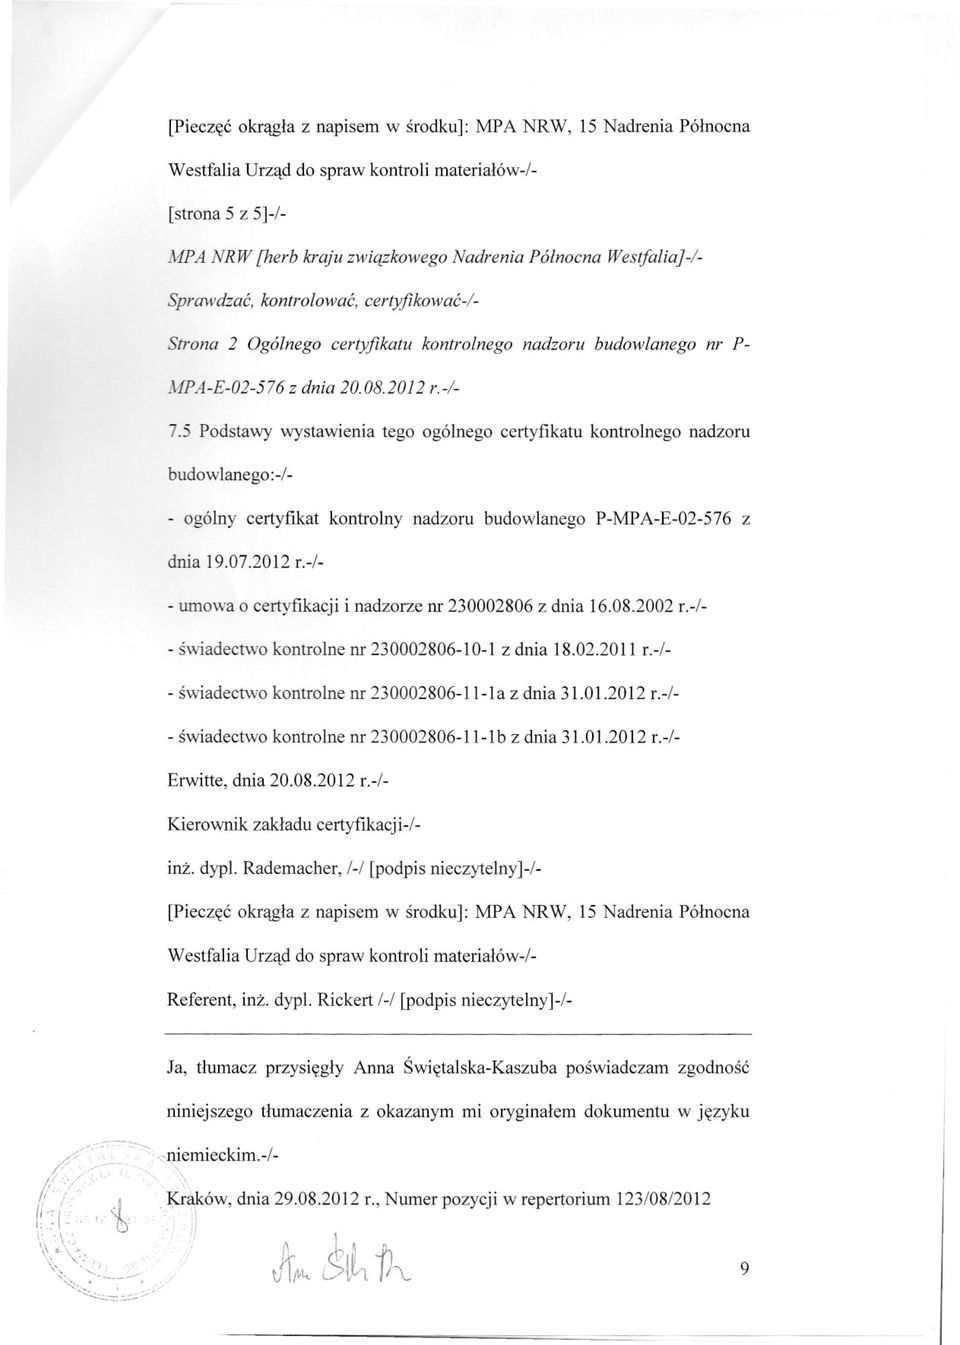 5 Podstawy wystawienia tego ogólnego certyfikatu kontrolnego nadzoru budowlanego:-/- - ogólny certyfikat kontrolny nadzoru budowlanego P-MPA-E-02-576 z dnia 19.07.2012 r.